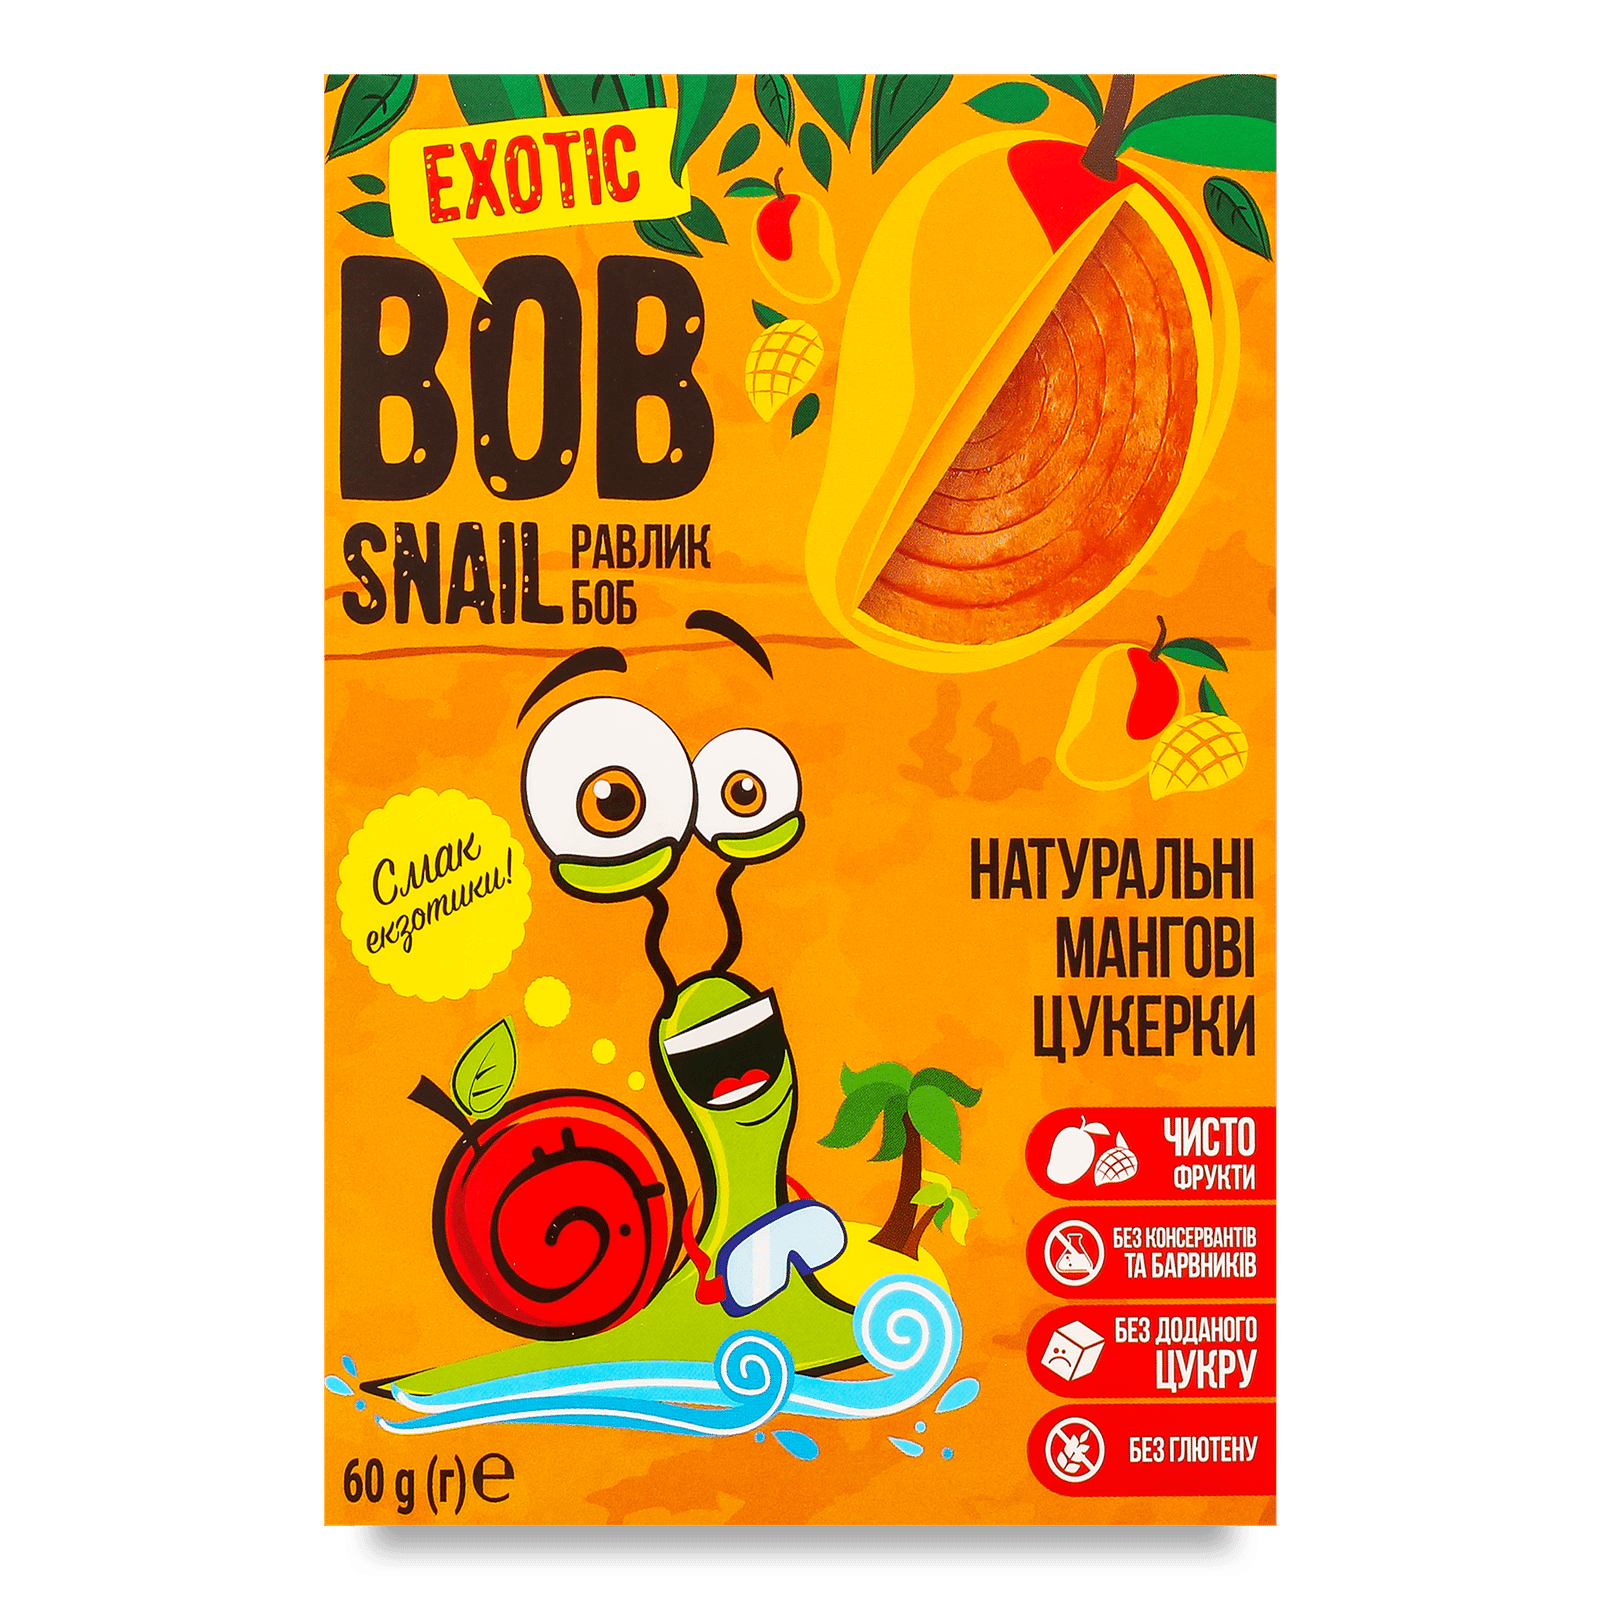 Цукерки Bob Snail мангові - 1